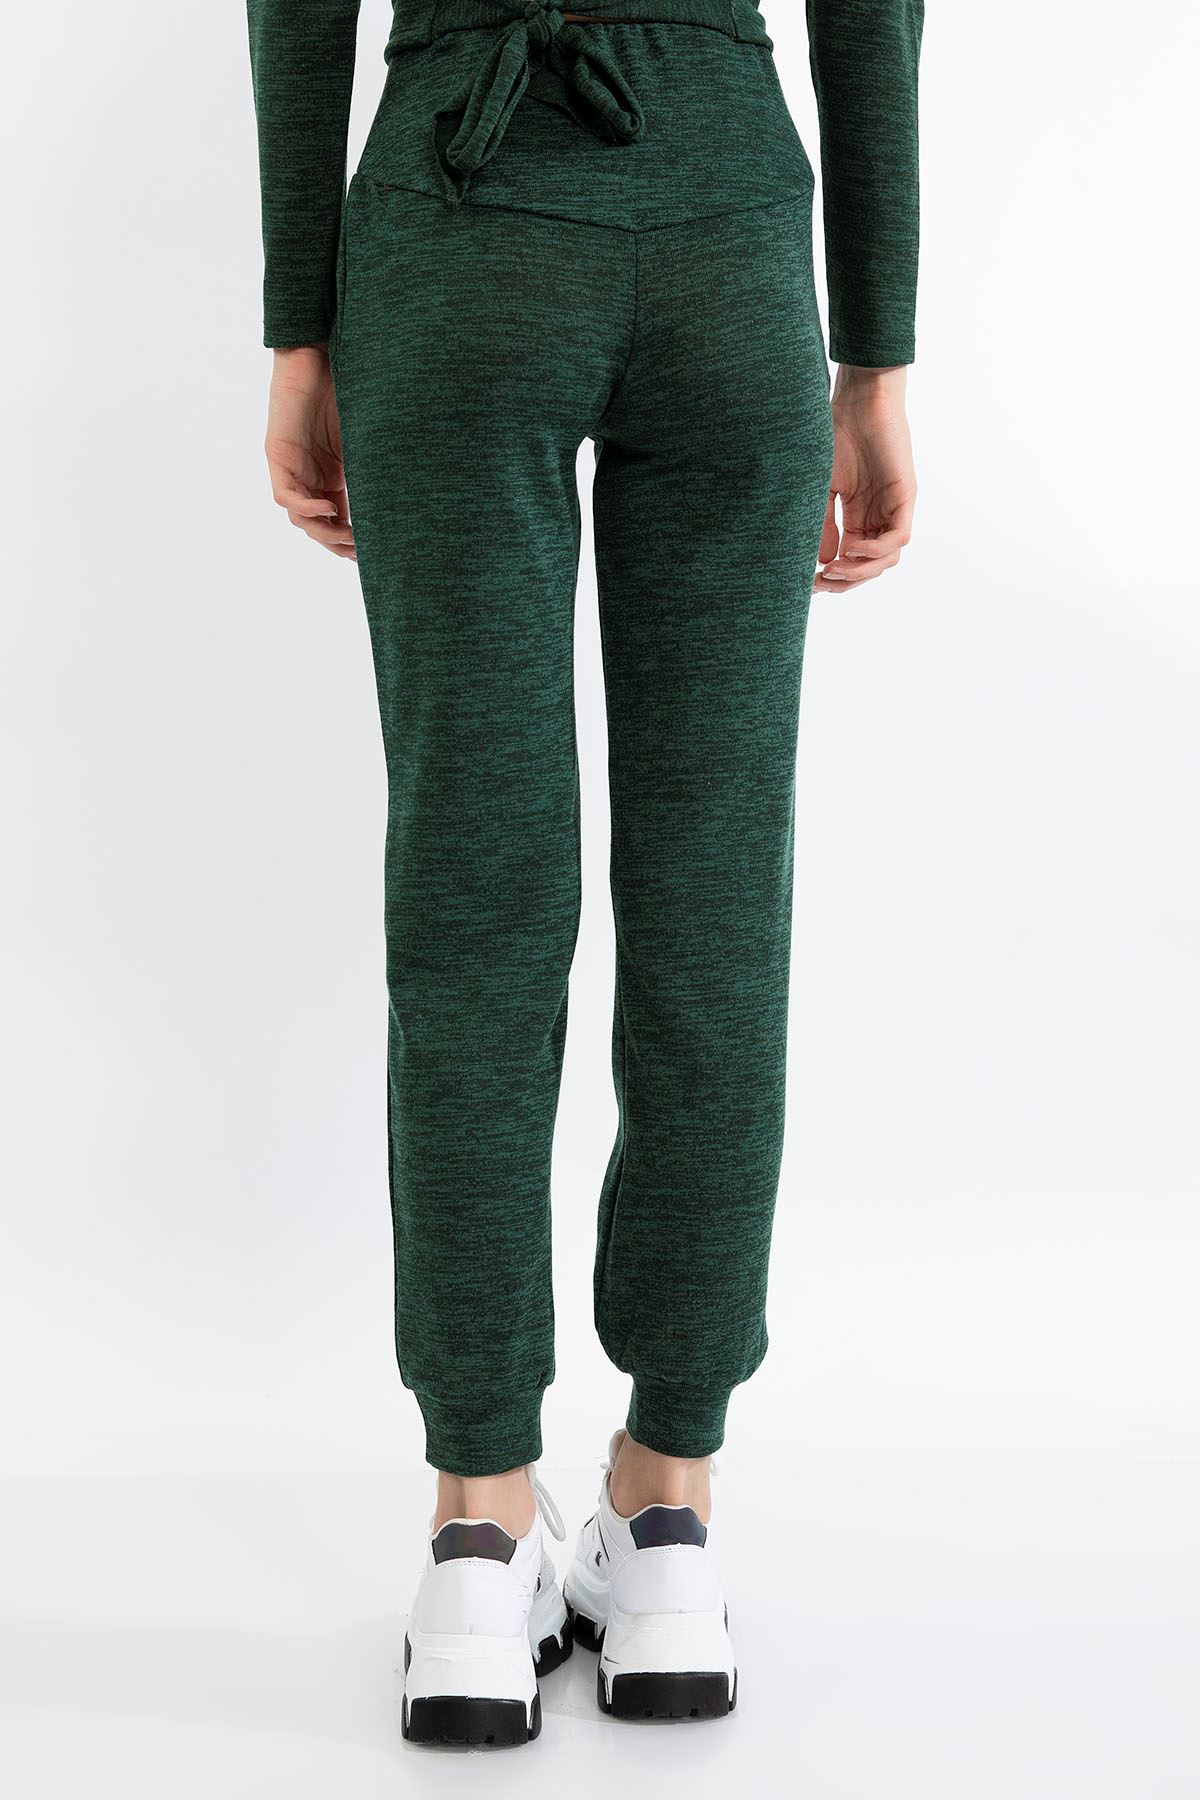 Melanj Kumaş Uzun Boy Rahat Kalıp Kırçıllı Kadın Pantolon-Zümrüt Yeşil